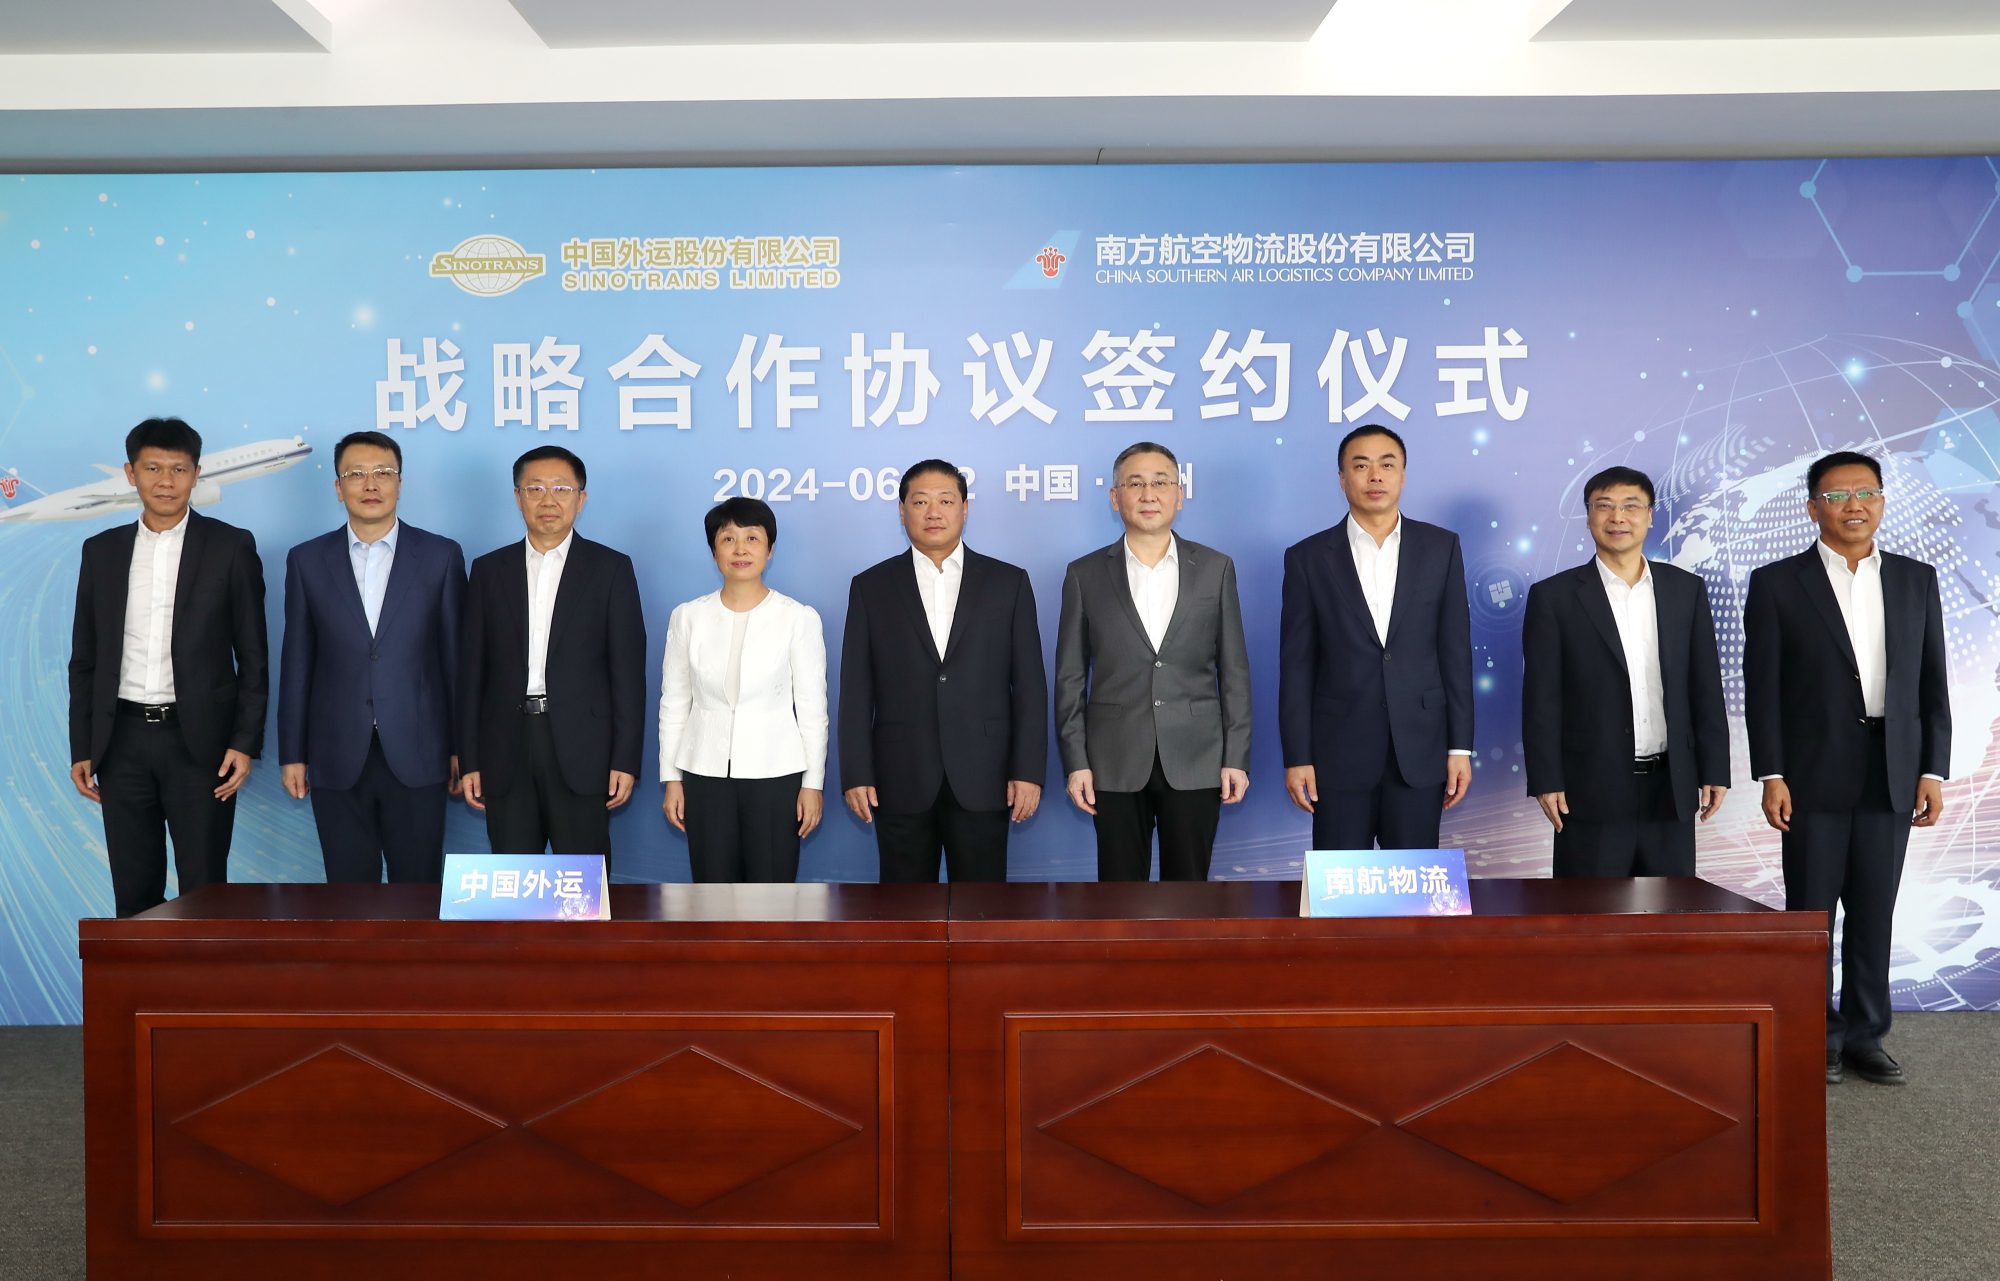 共建通達全球現代化物流體系 南航物流與中國外運簽訂戰略合作協議